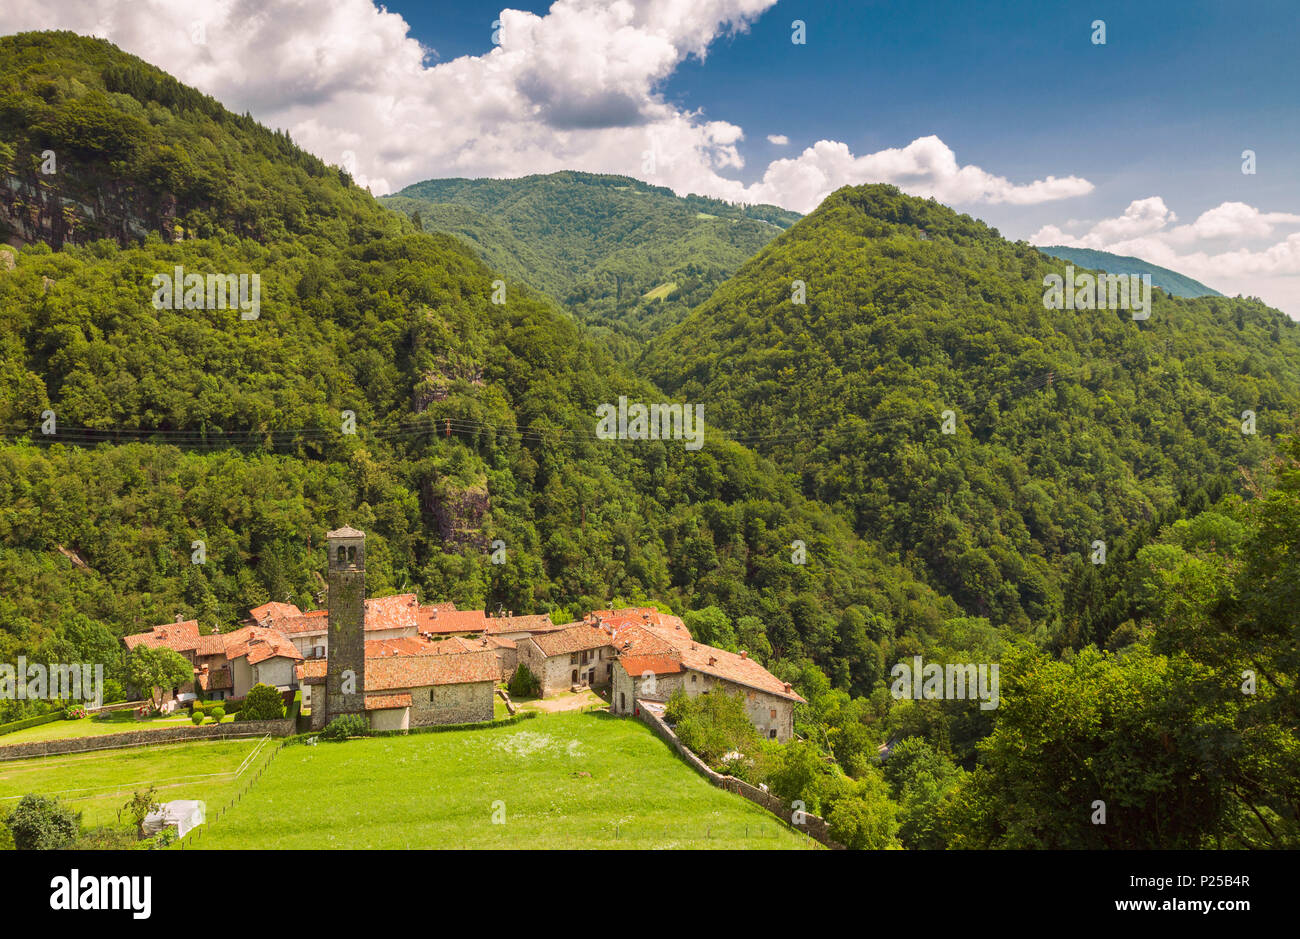 Ancient village of Cornello dei Tasso, Camerata Cornello, Bergamo province, Brembana valley, Lombardy, Italy, Europe Stock Photo